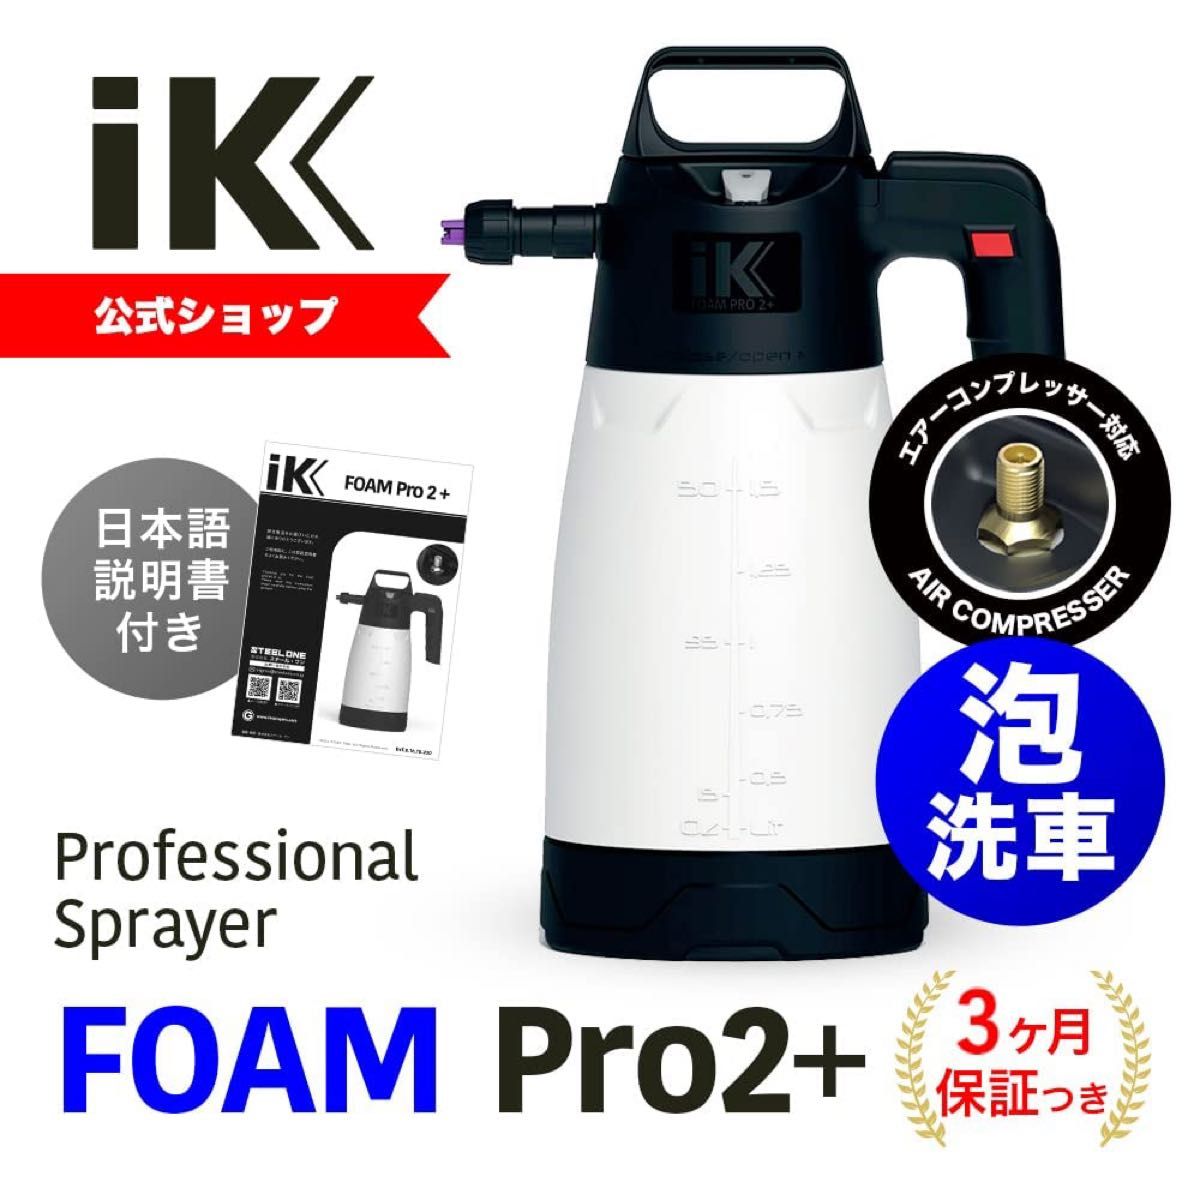 【 日本正規品 】 iK アイケイ フォームプロ2プラス ポンプスプレー 蓄圧式スプレー 噴霧器 洗車 日本語説明書付き  